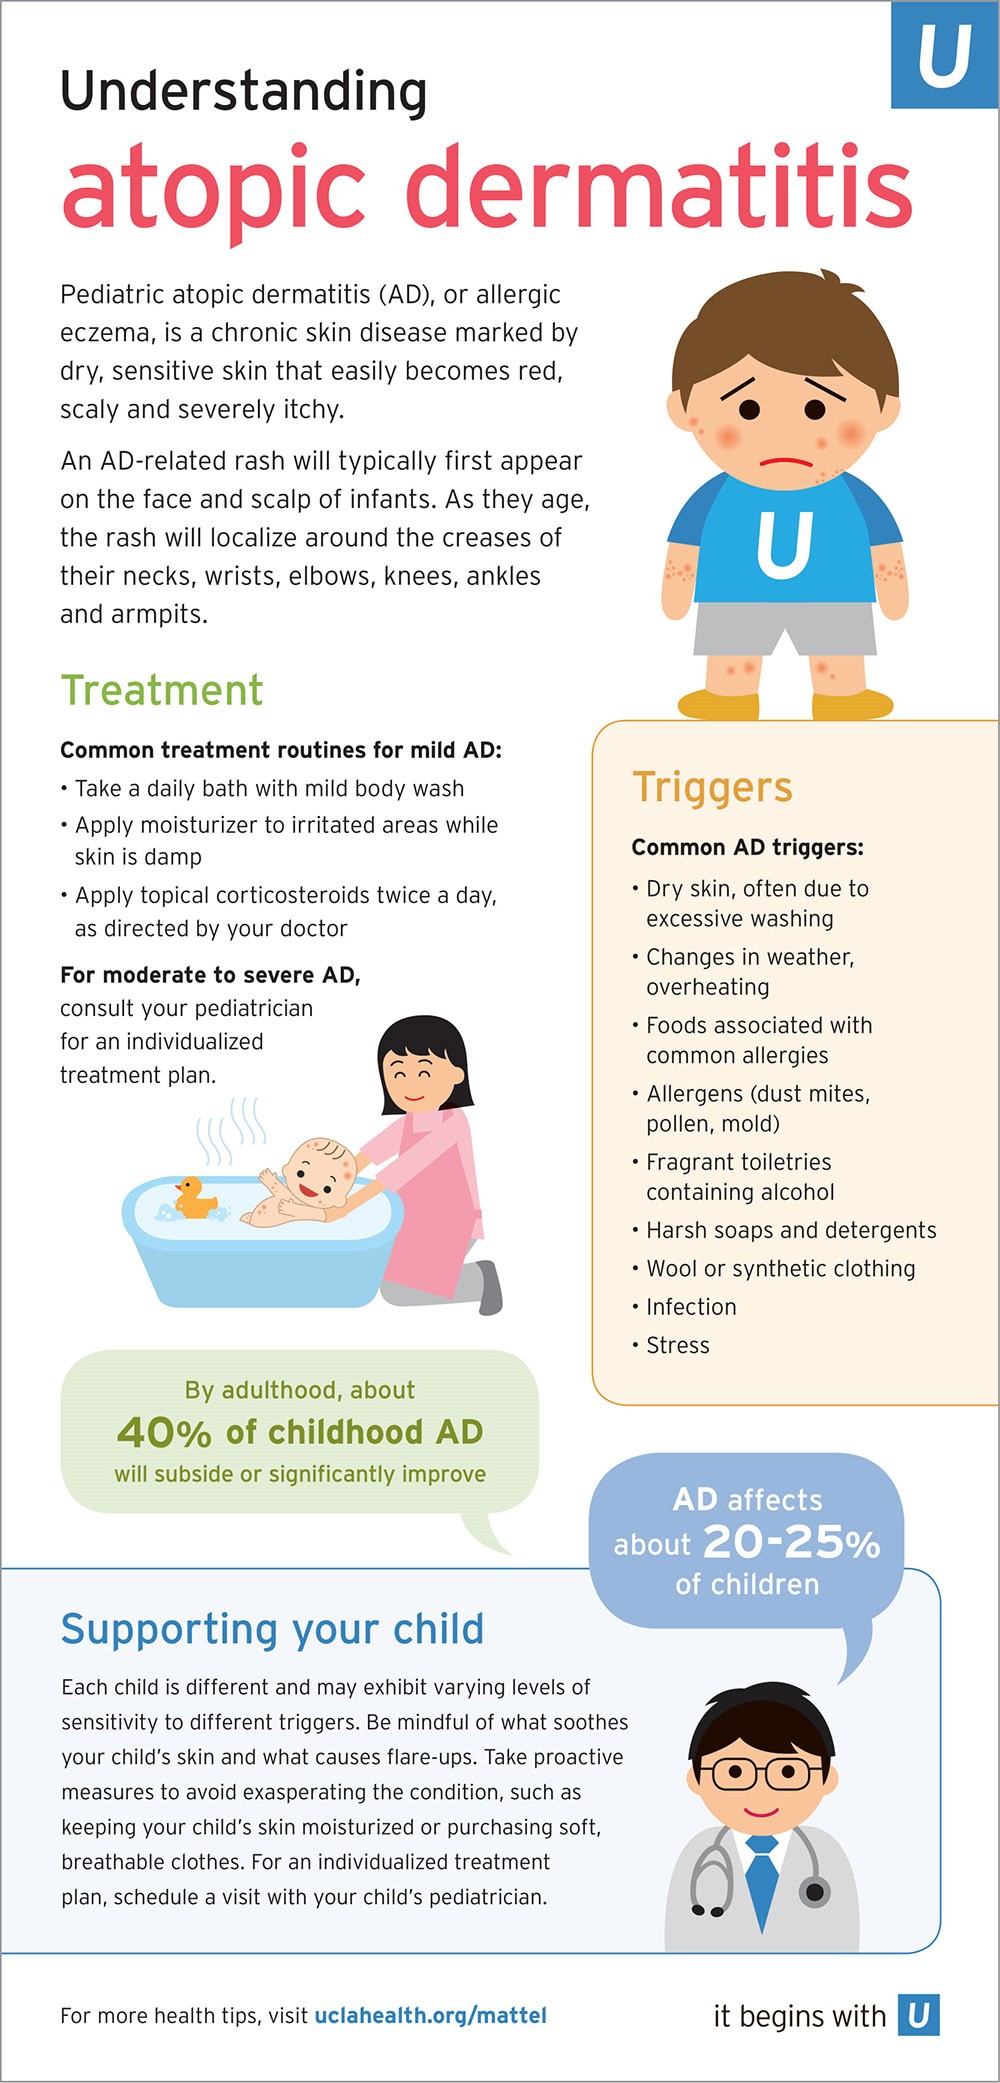 health-tips-for-parents-understanding-atopic-dermatitis-in-children